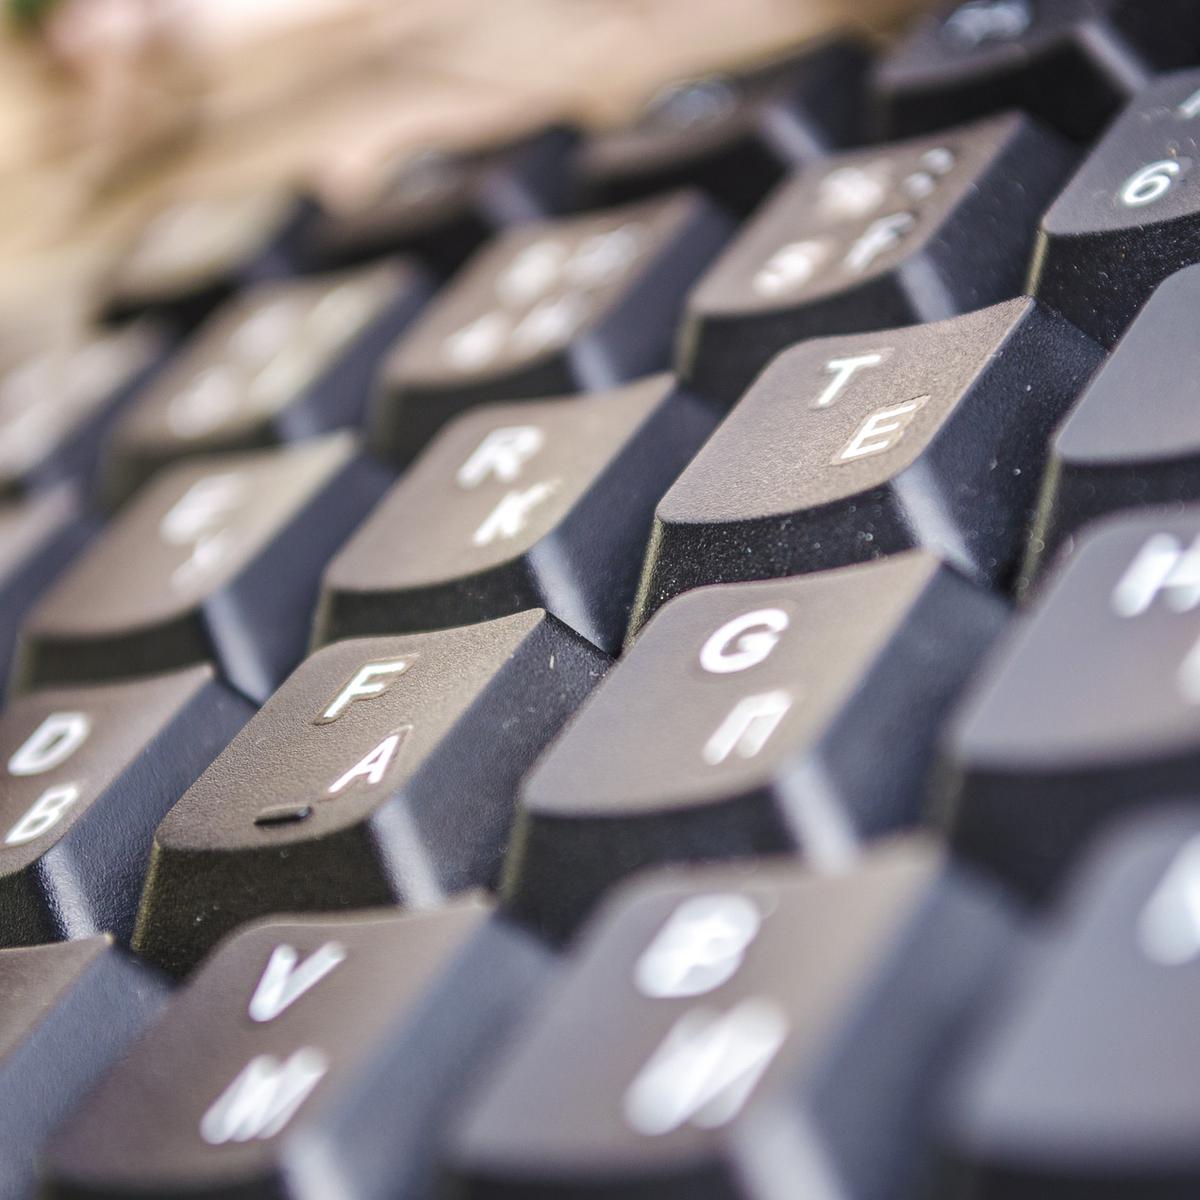 Trucos limpieza: Las maneras más efectivas de limpiar el teclado